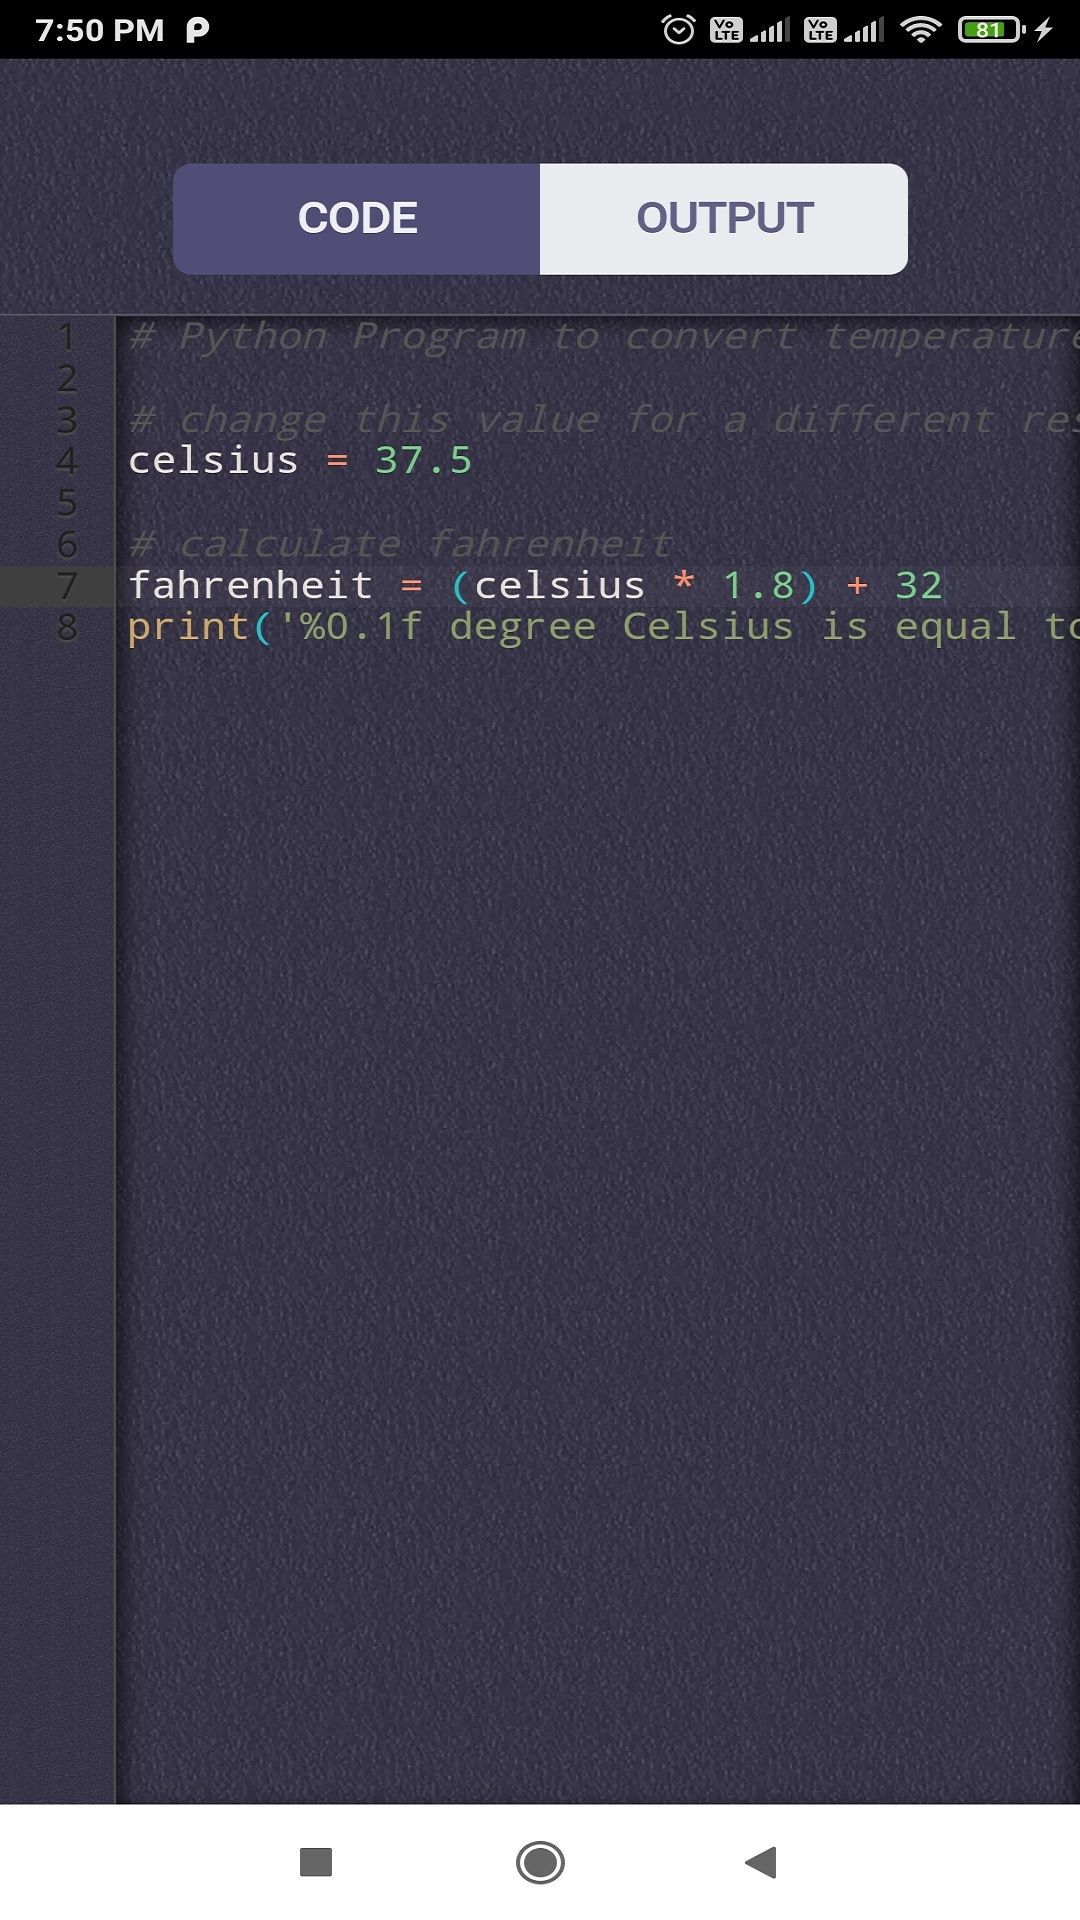 Python Editor